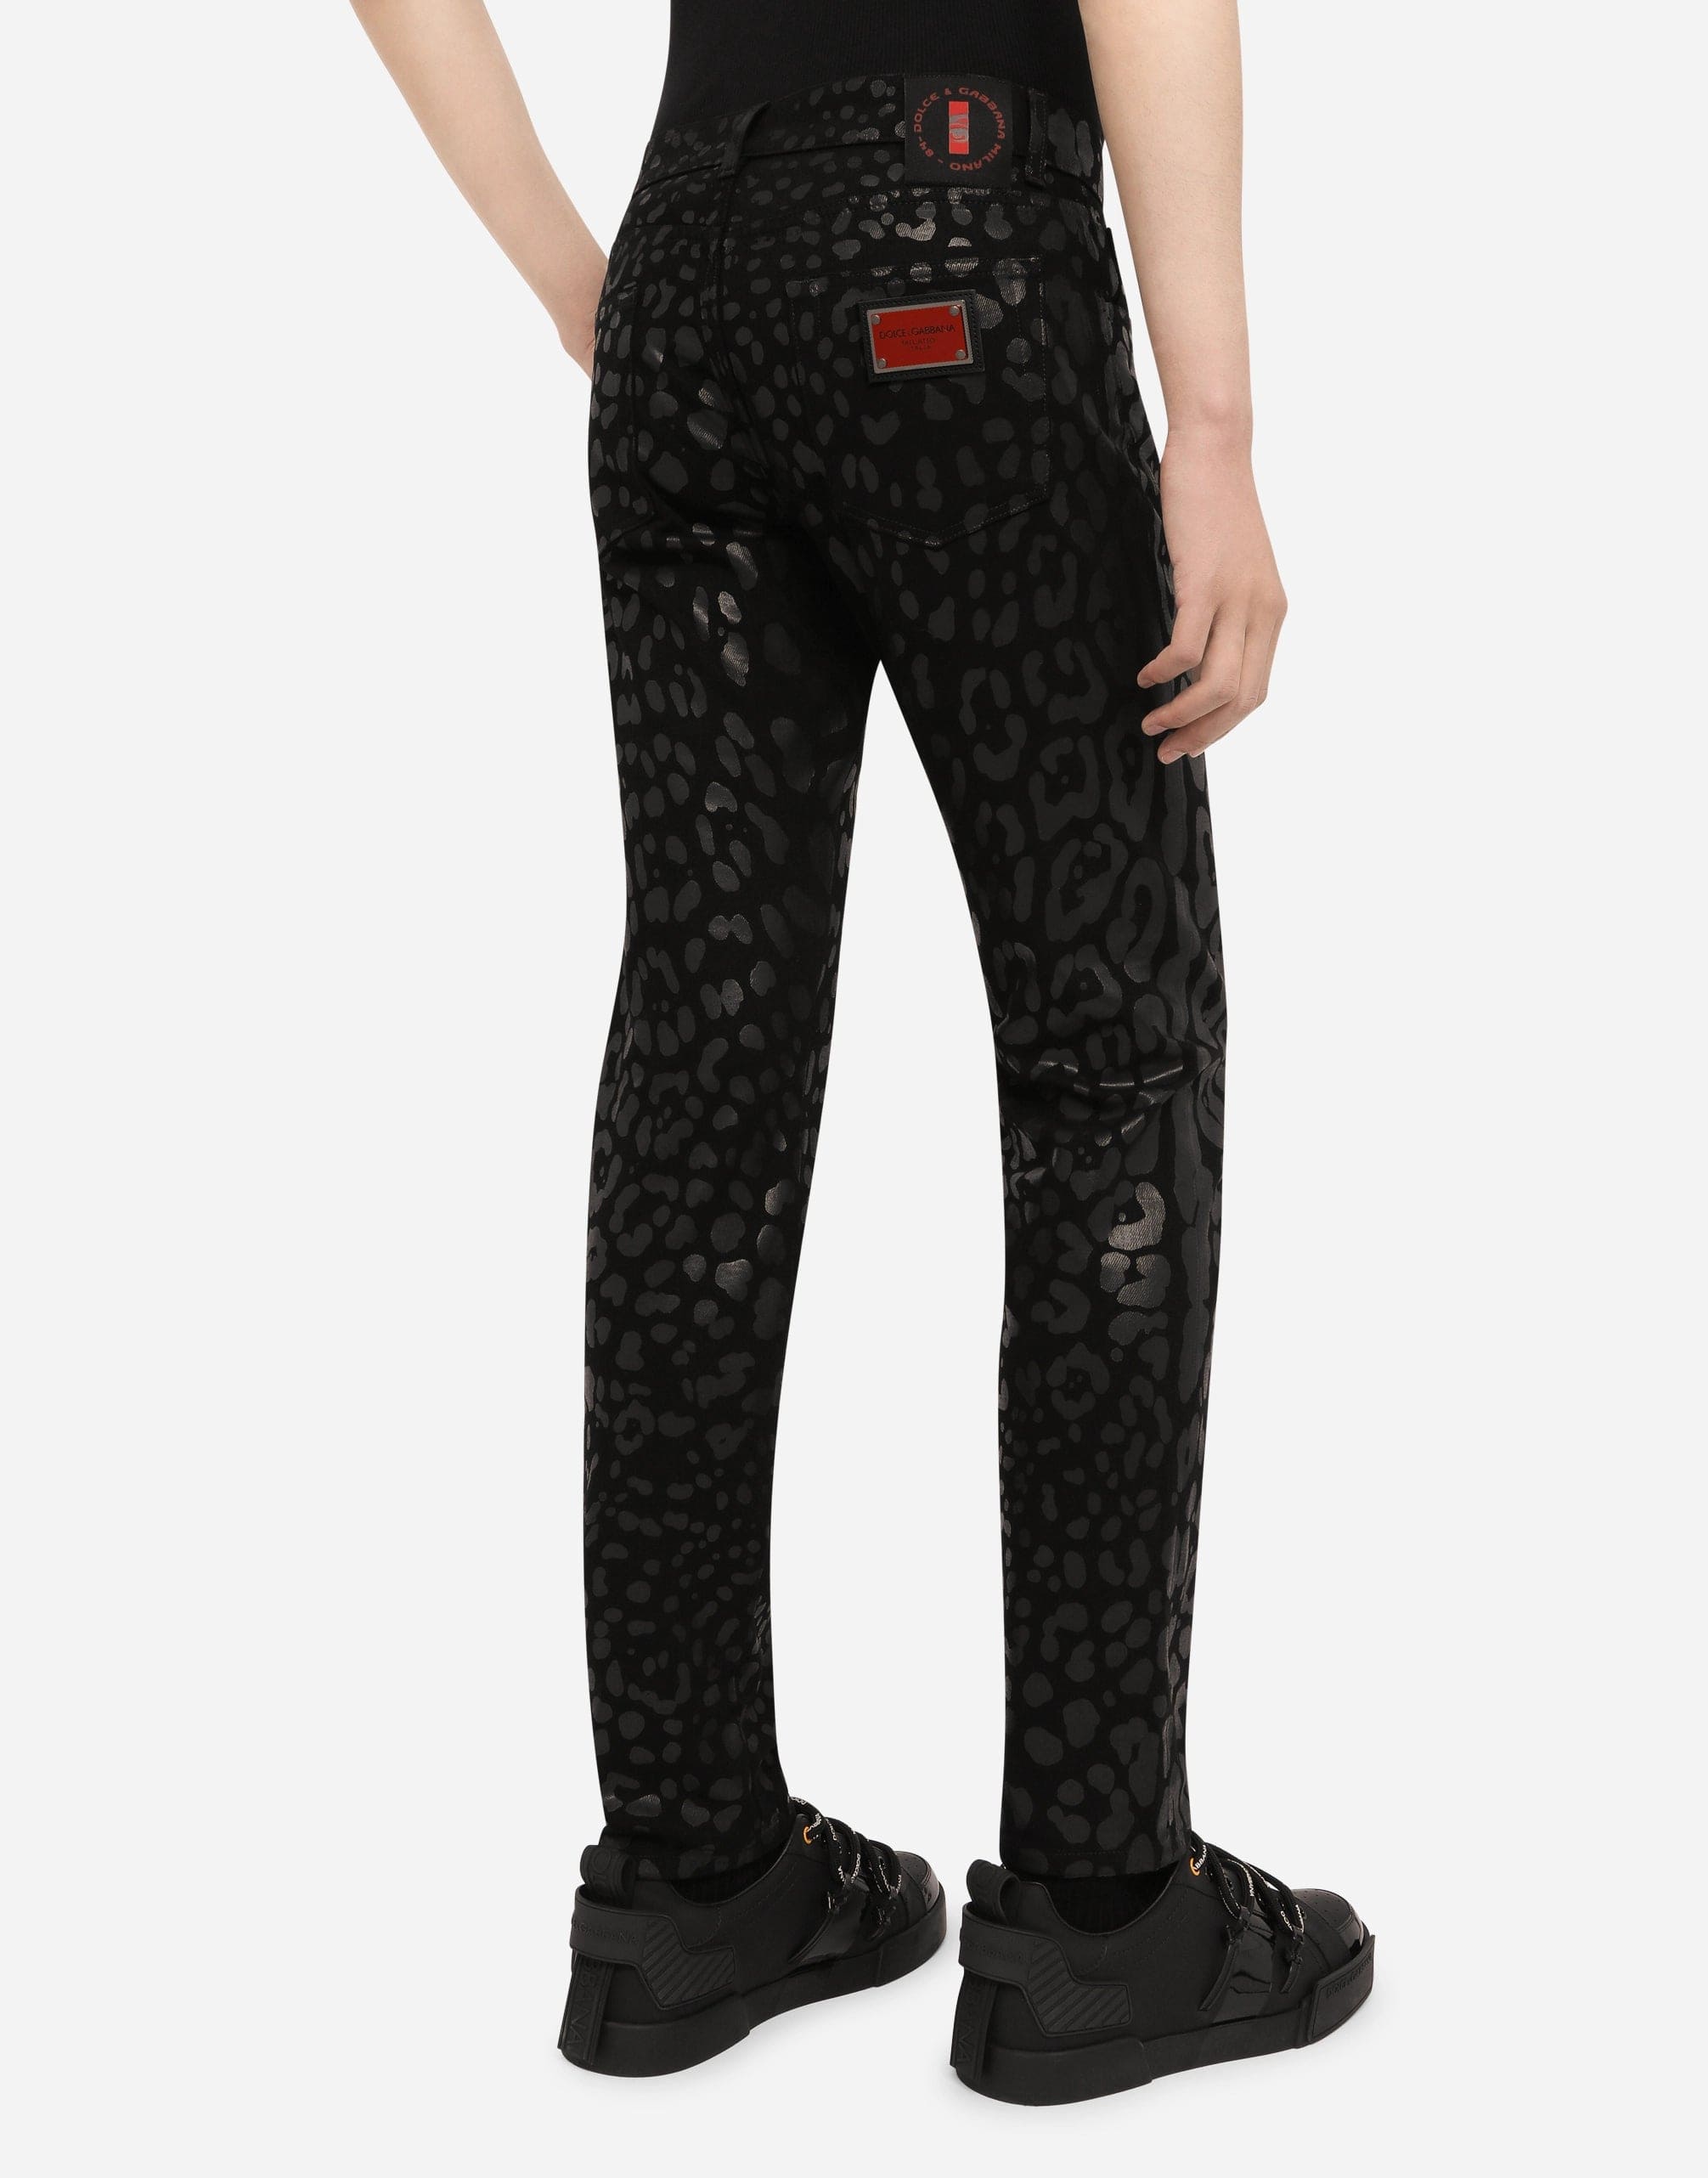 Jeans slim fit floccati con stampa leopardata